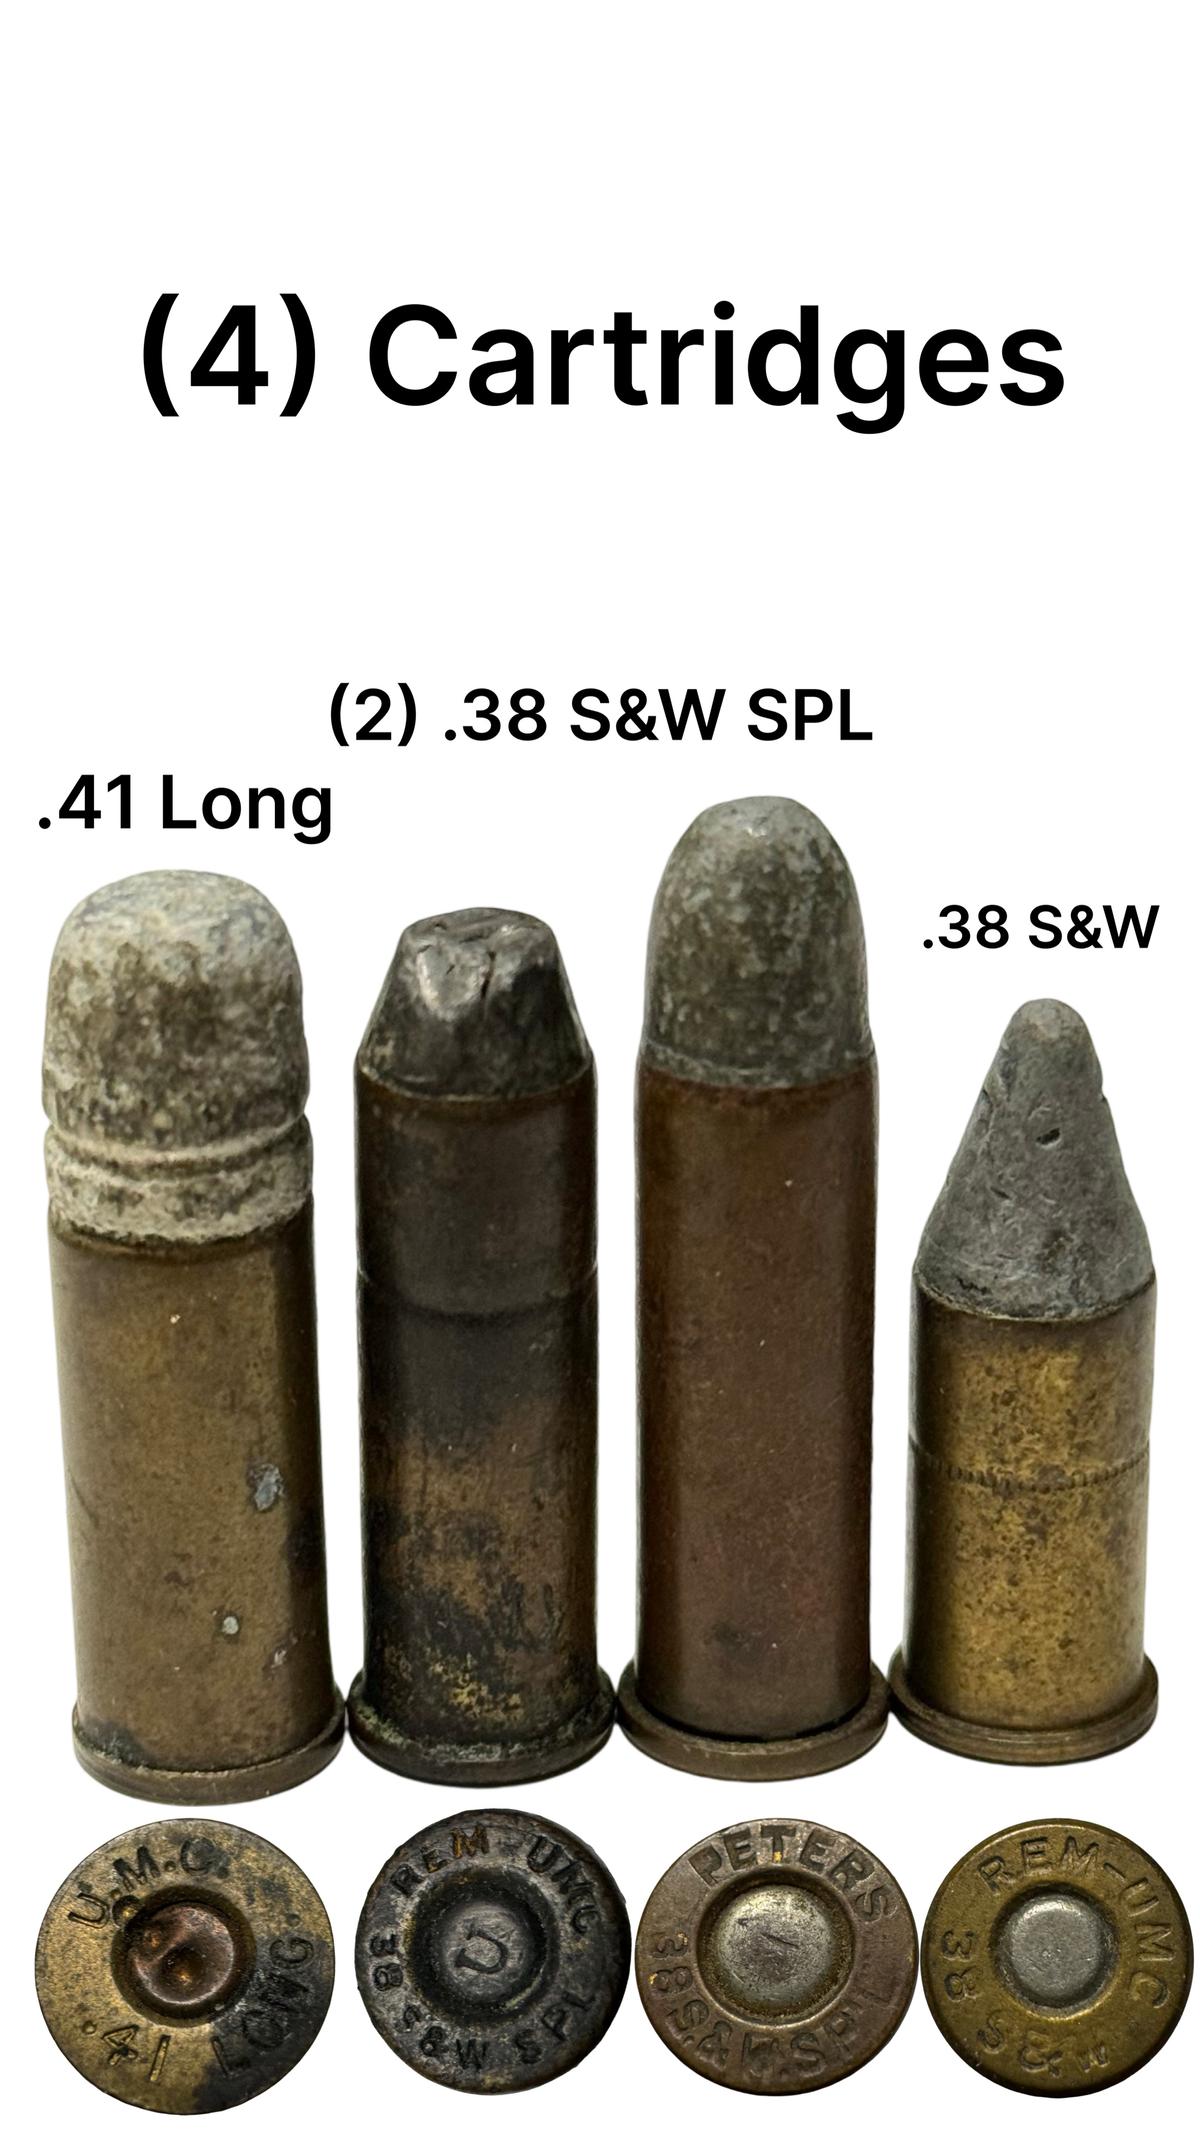 (4) Cartridges - .41 Long, (2) .38 S&W SPL, .38 S&W